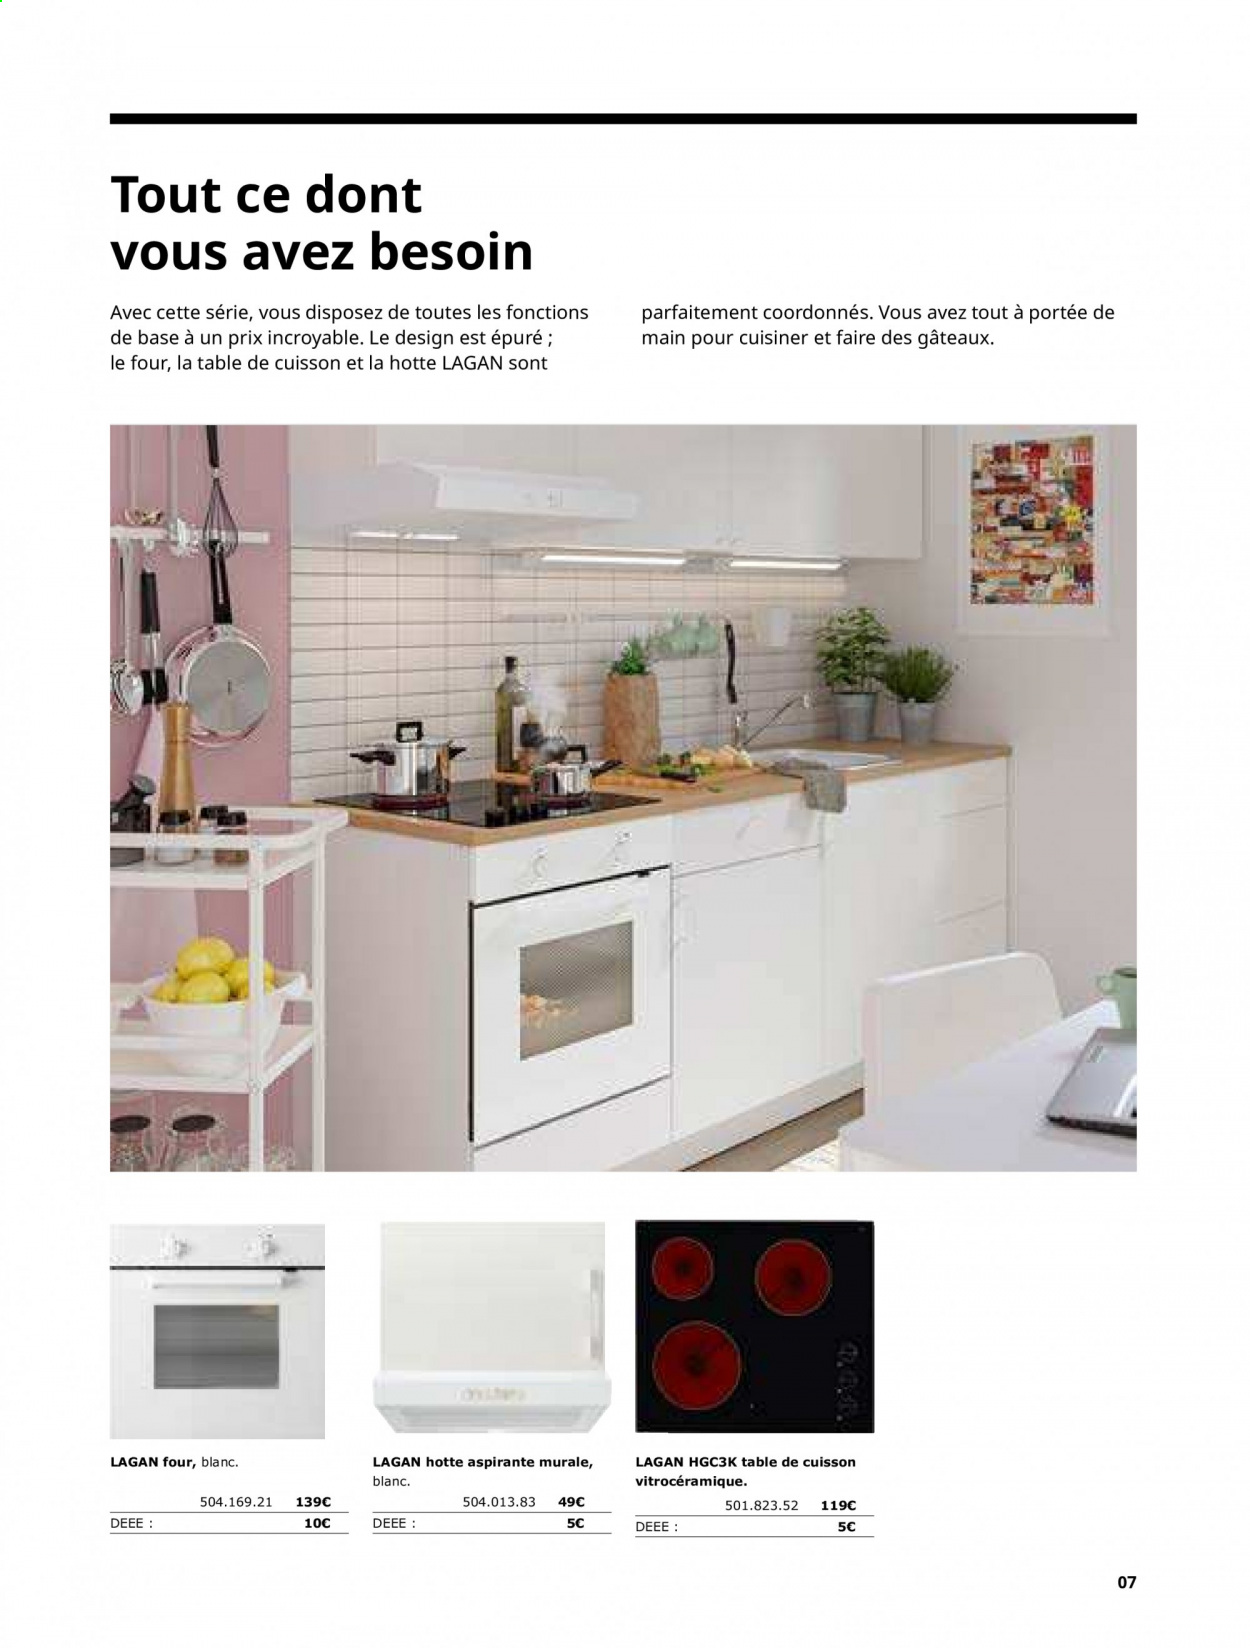 Catalogue IKEA. Page 7.